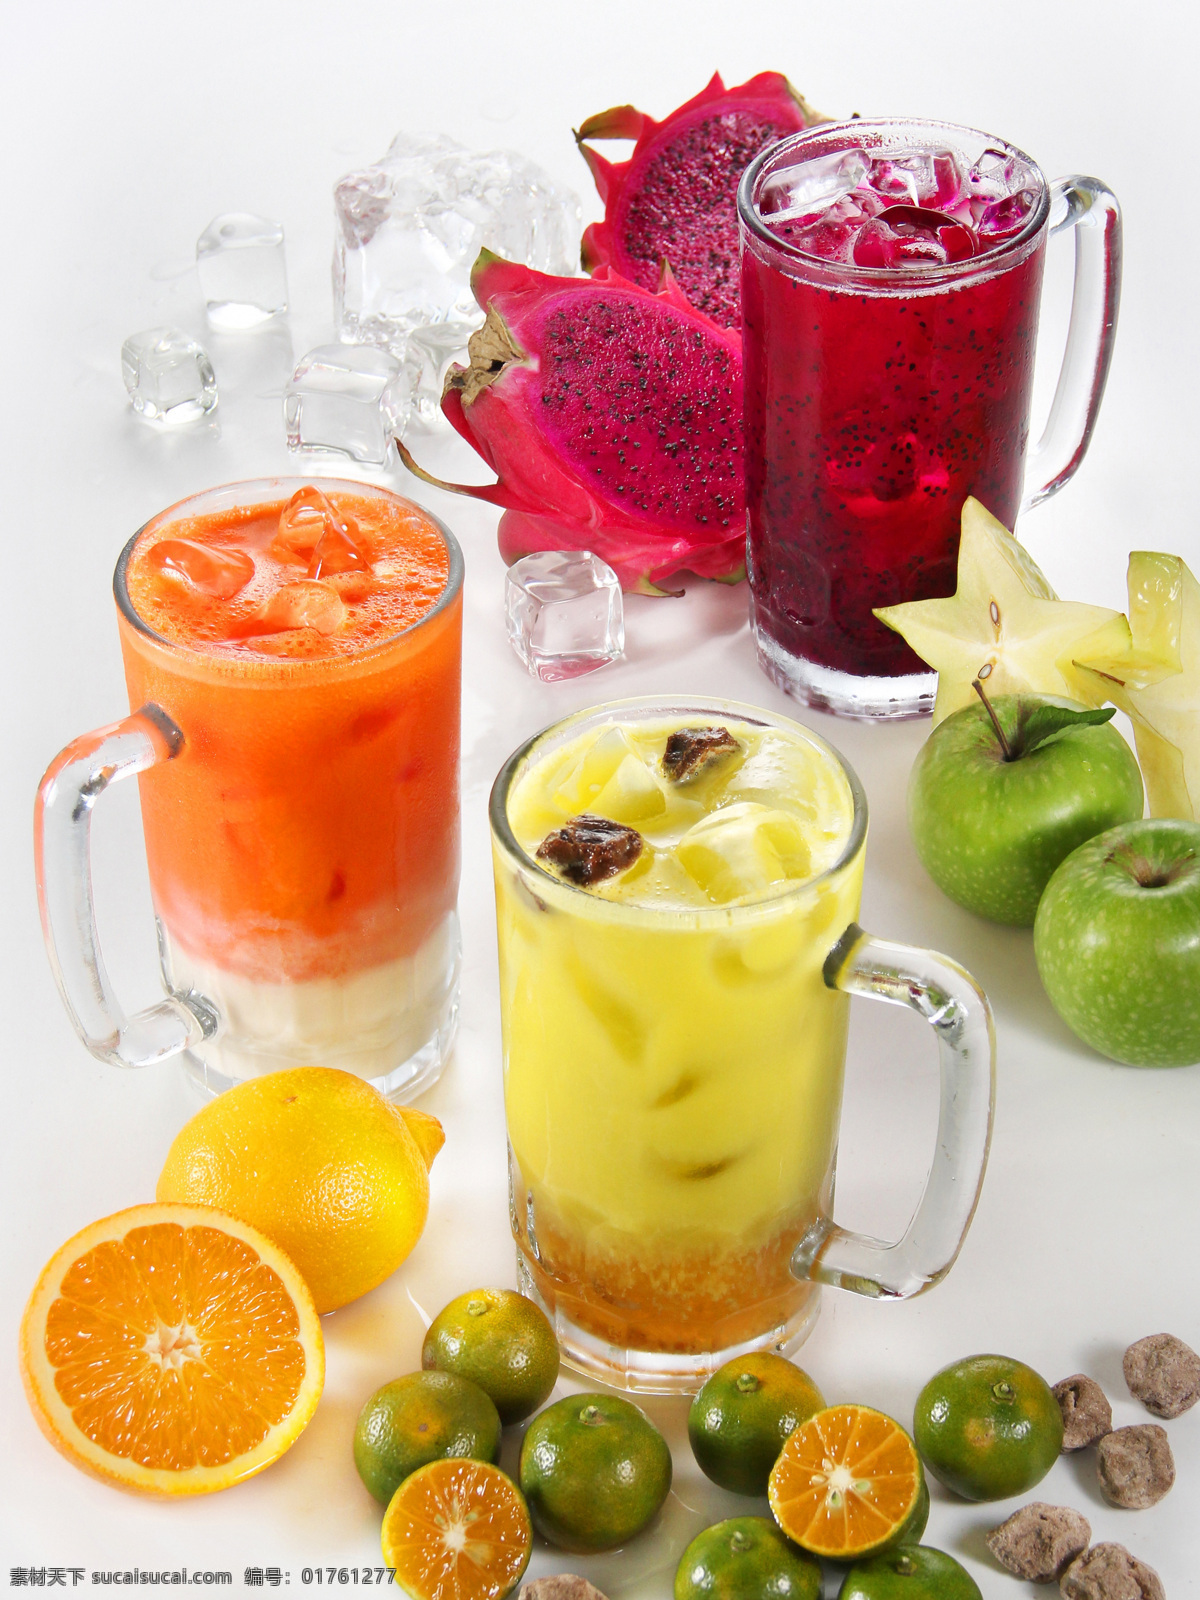 水果 果汁 新鲜水果 摄影图 橙 水果切面 切开的水果 桔子 柠檬 玻璃杯 火龙果 冰块 苹果 水果图片 餐饮美食